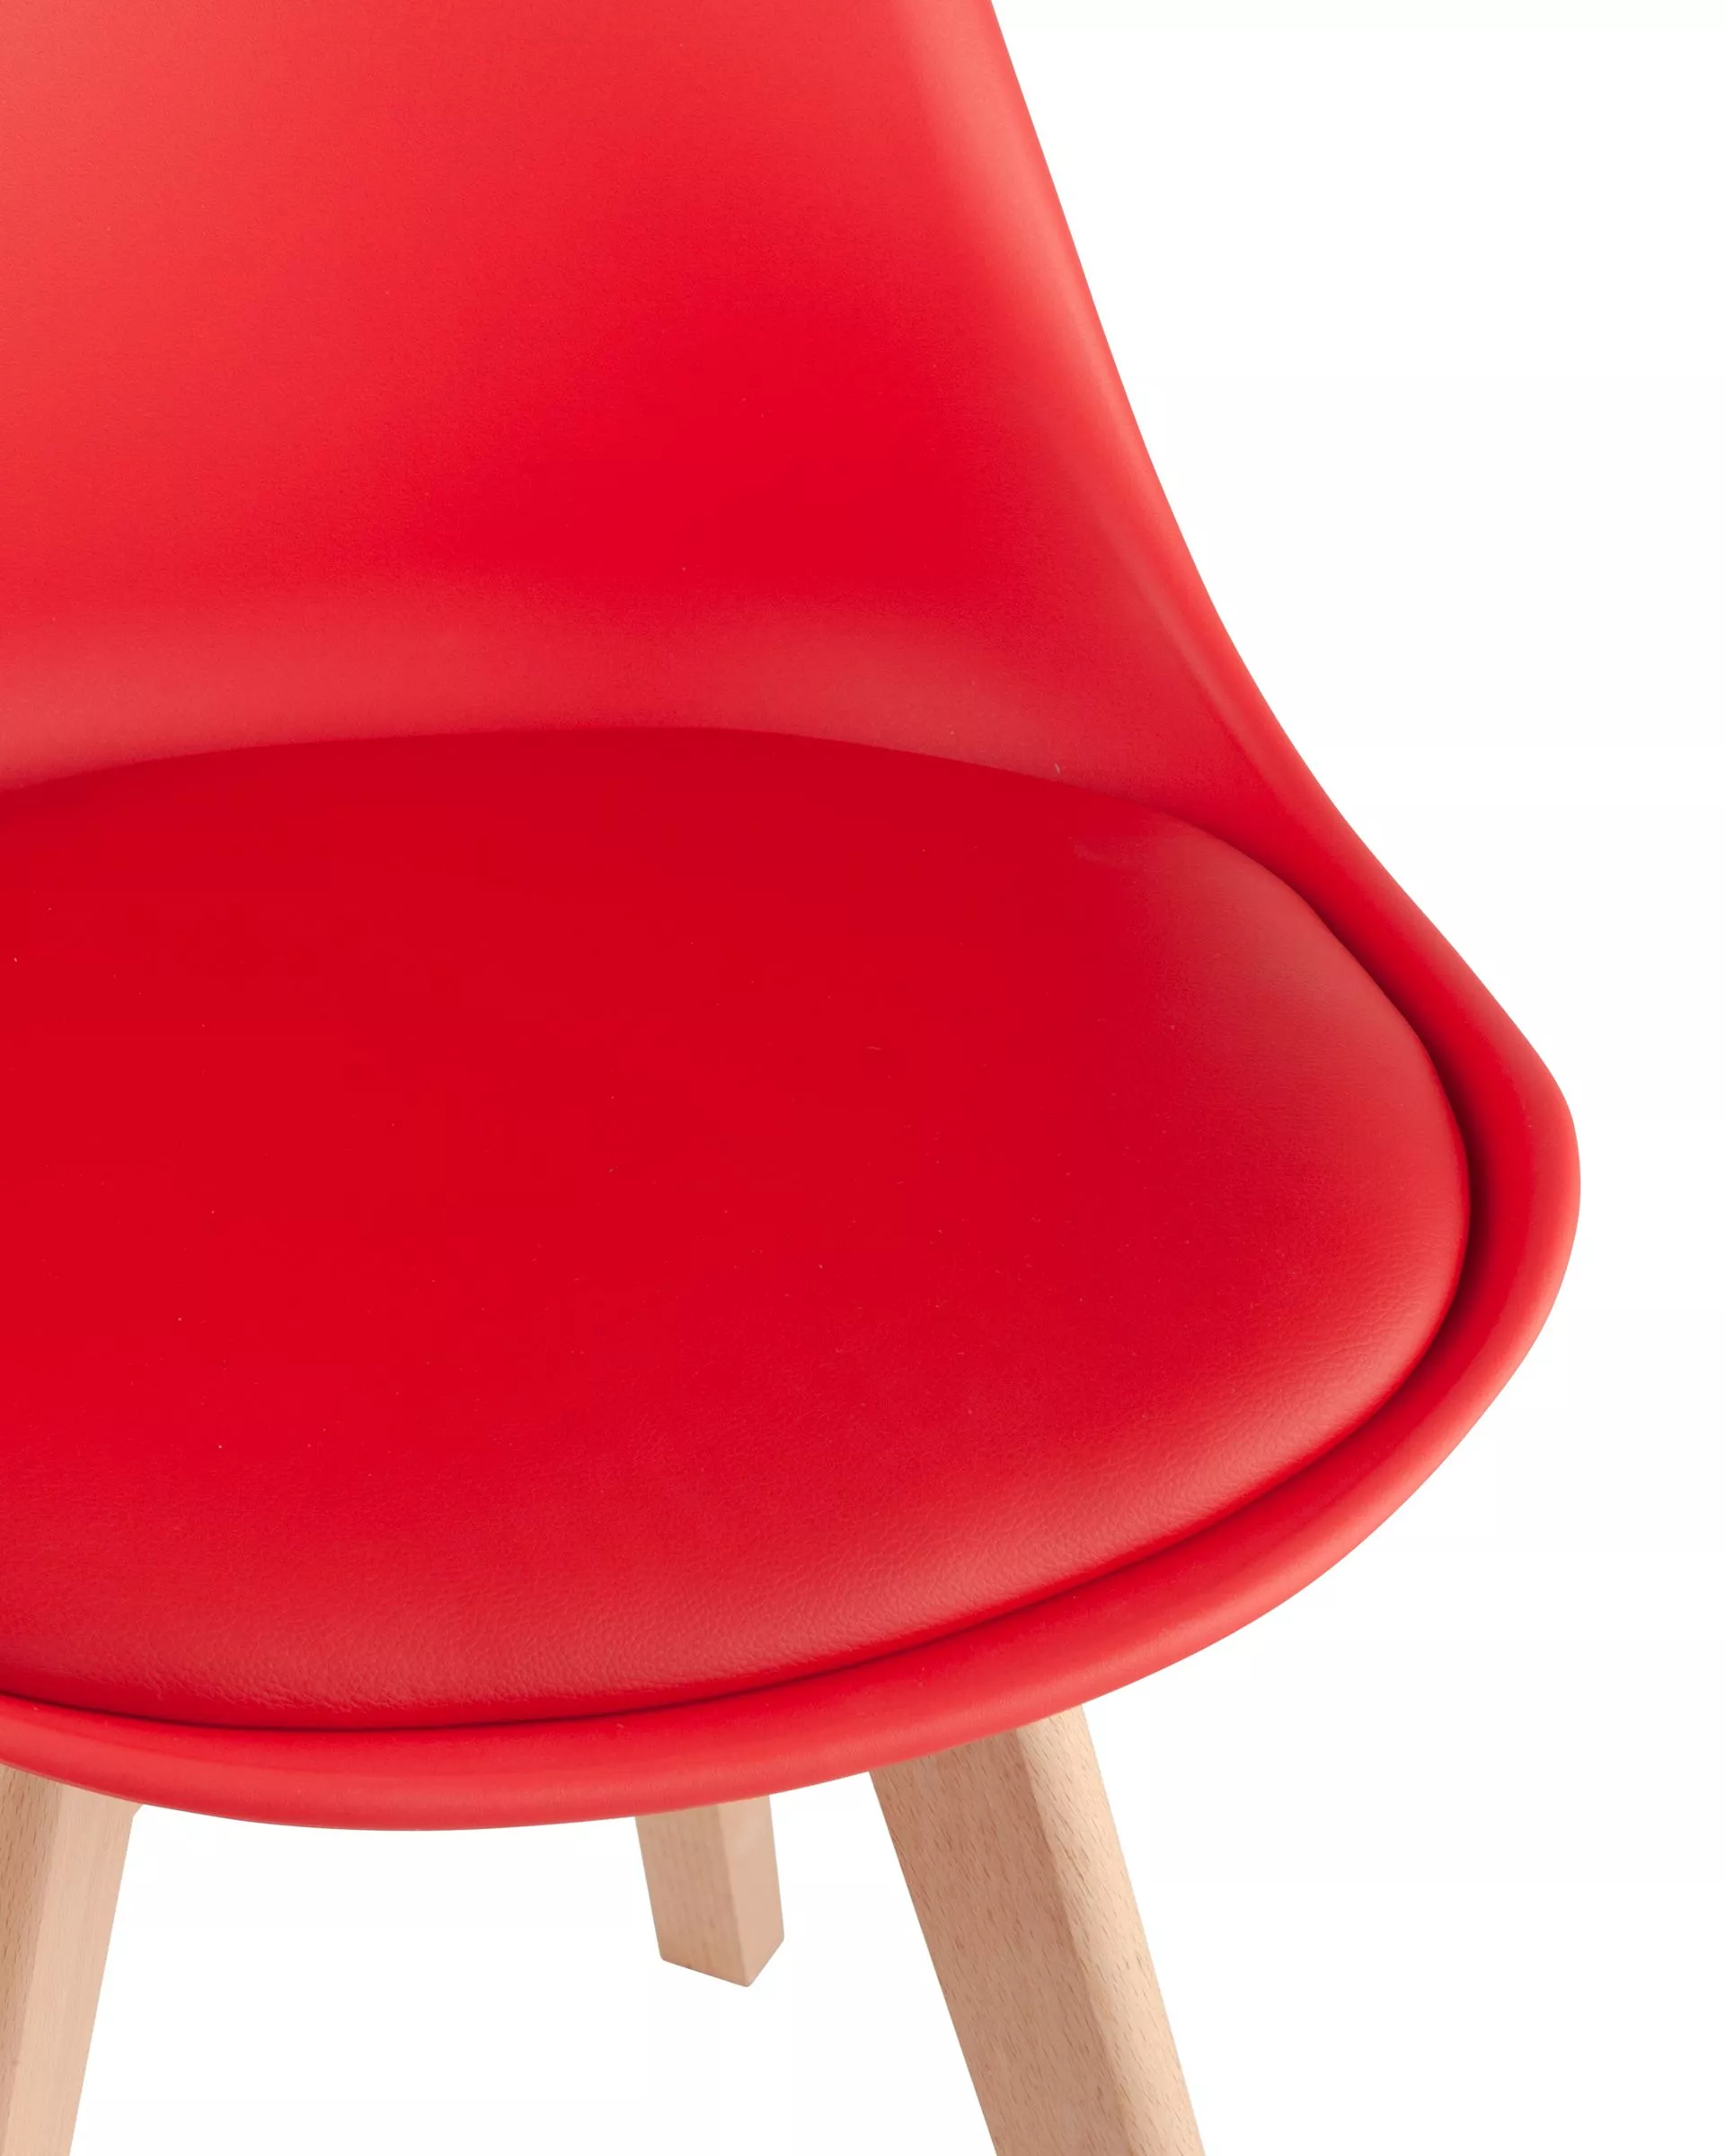 Комплект стульев FRANKFURT красный 4 шт